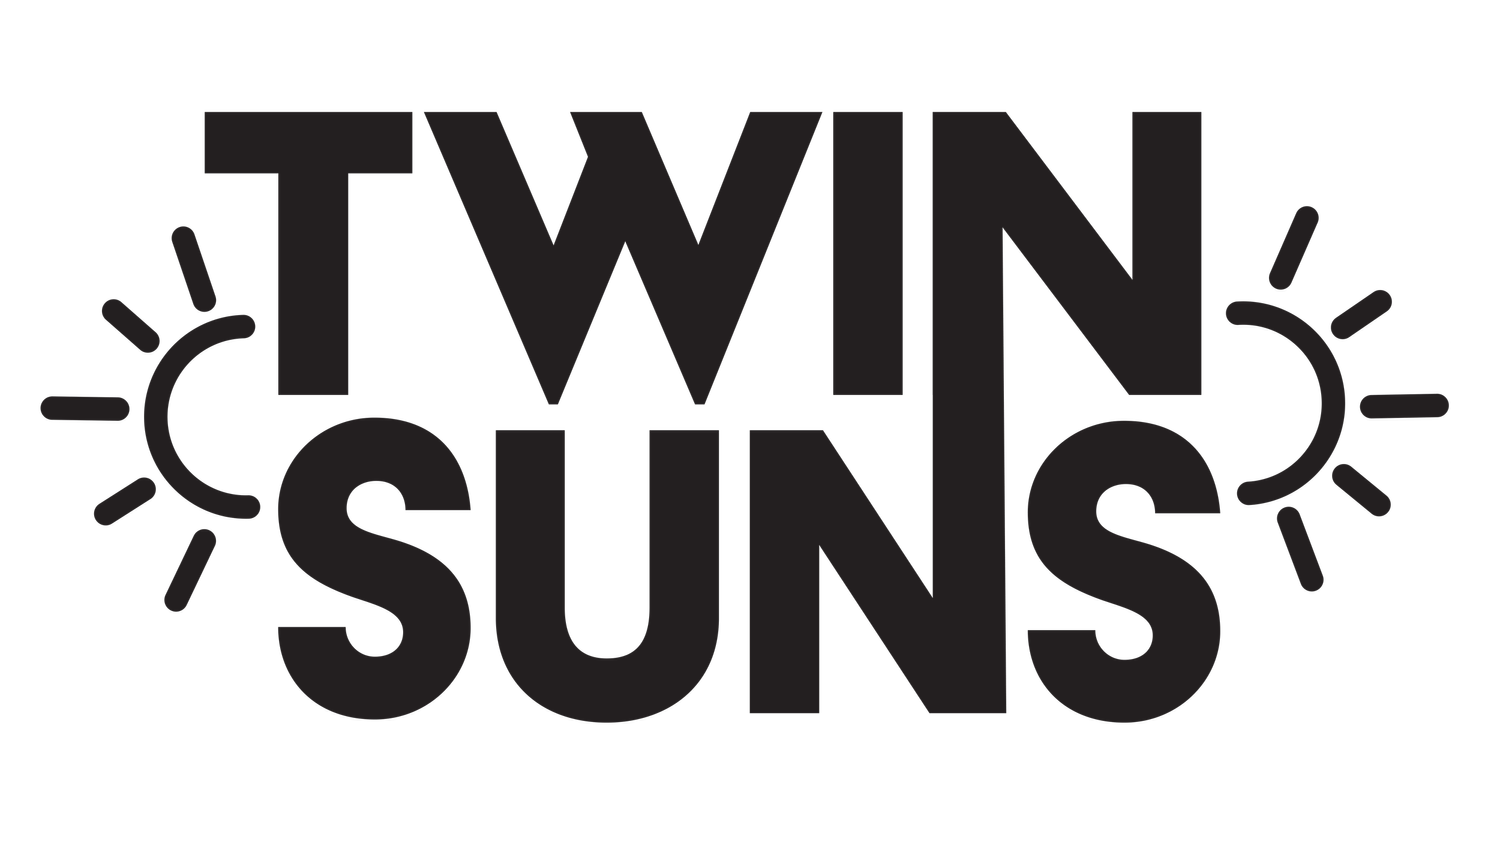 Twin Suns